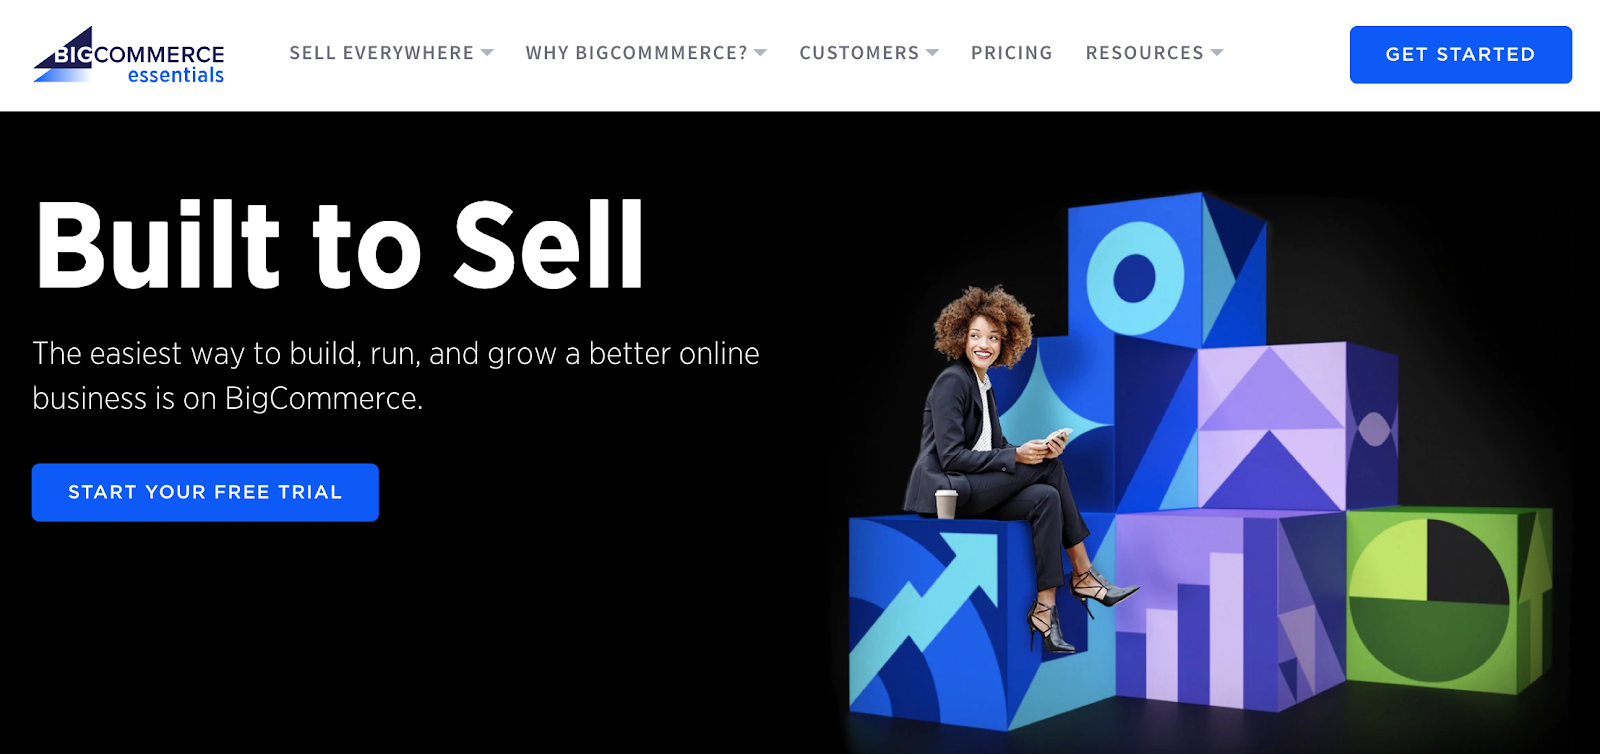 beste e-commerce tools 2020 bigcommerce